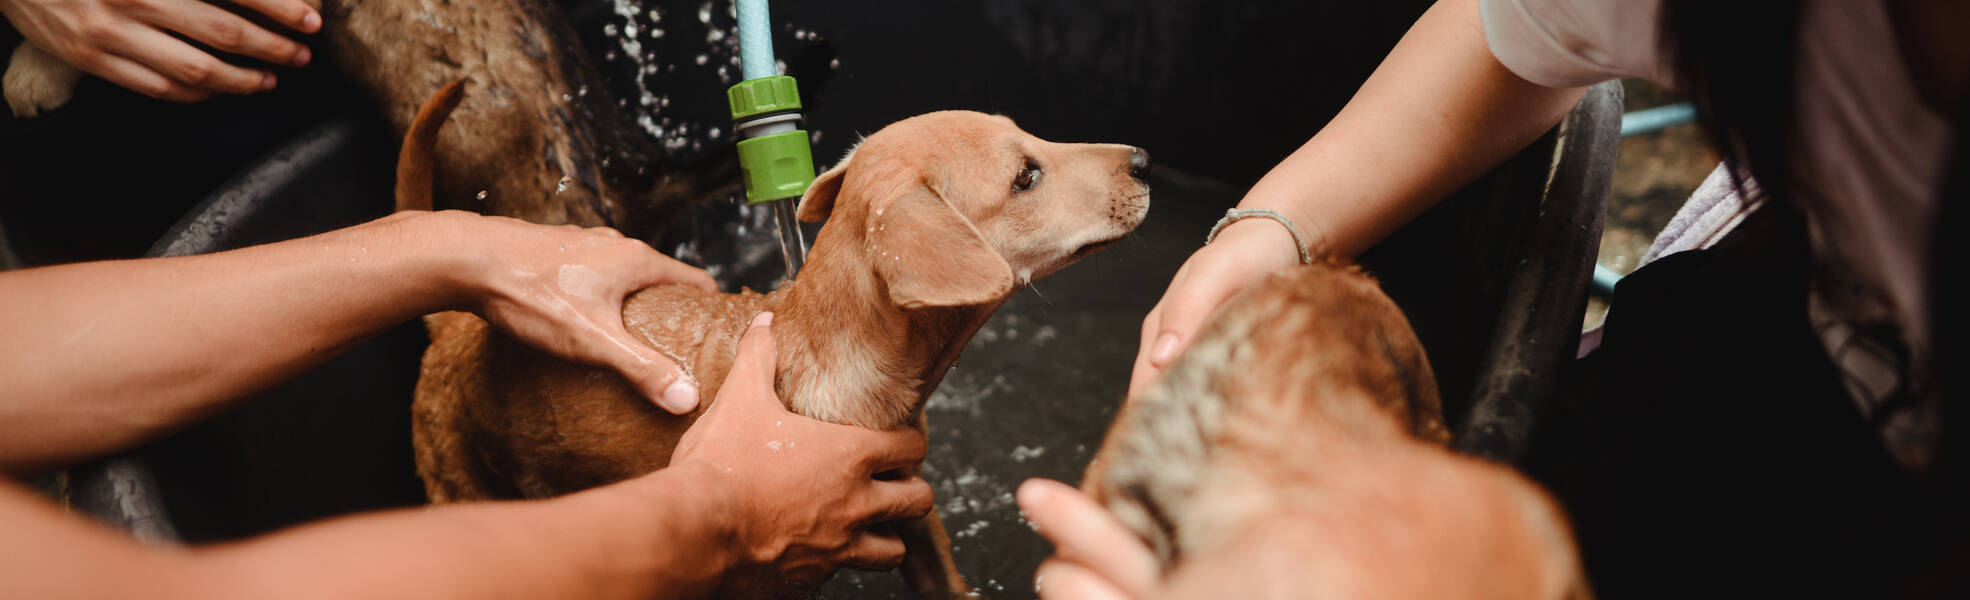 Tierheime im Ausland: Hunde werden gewaschen